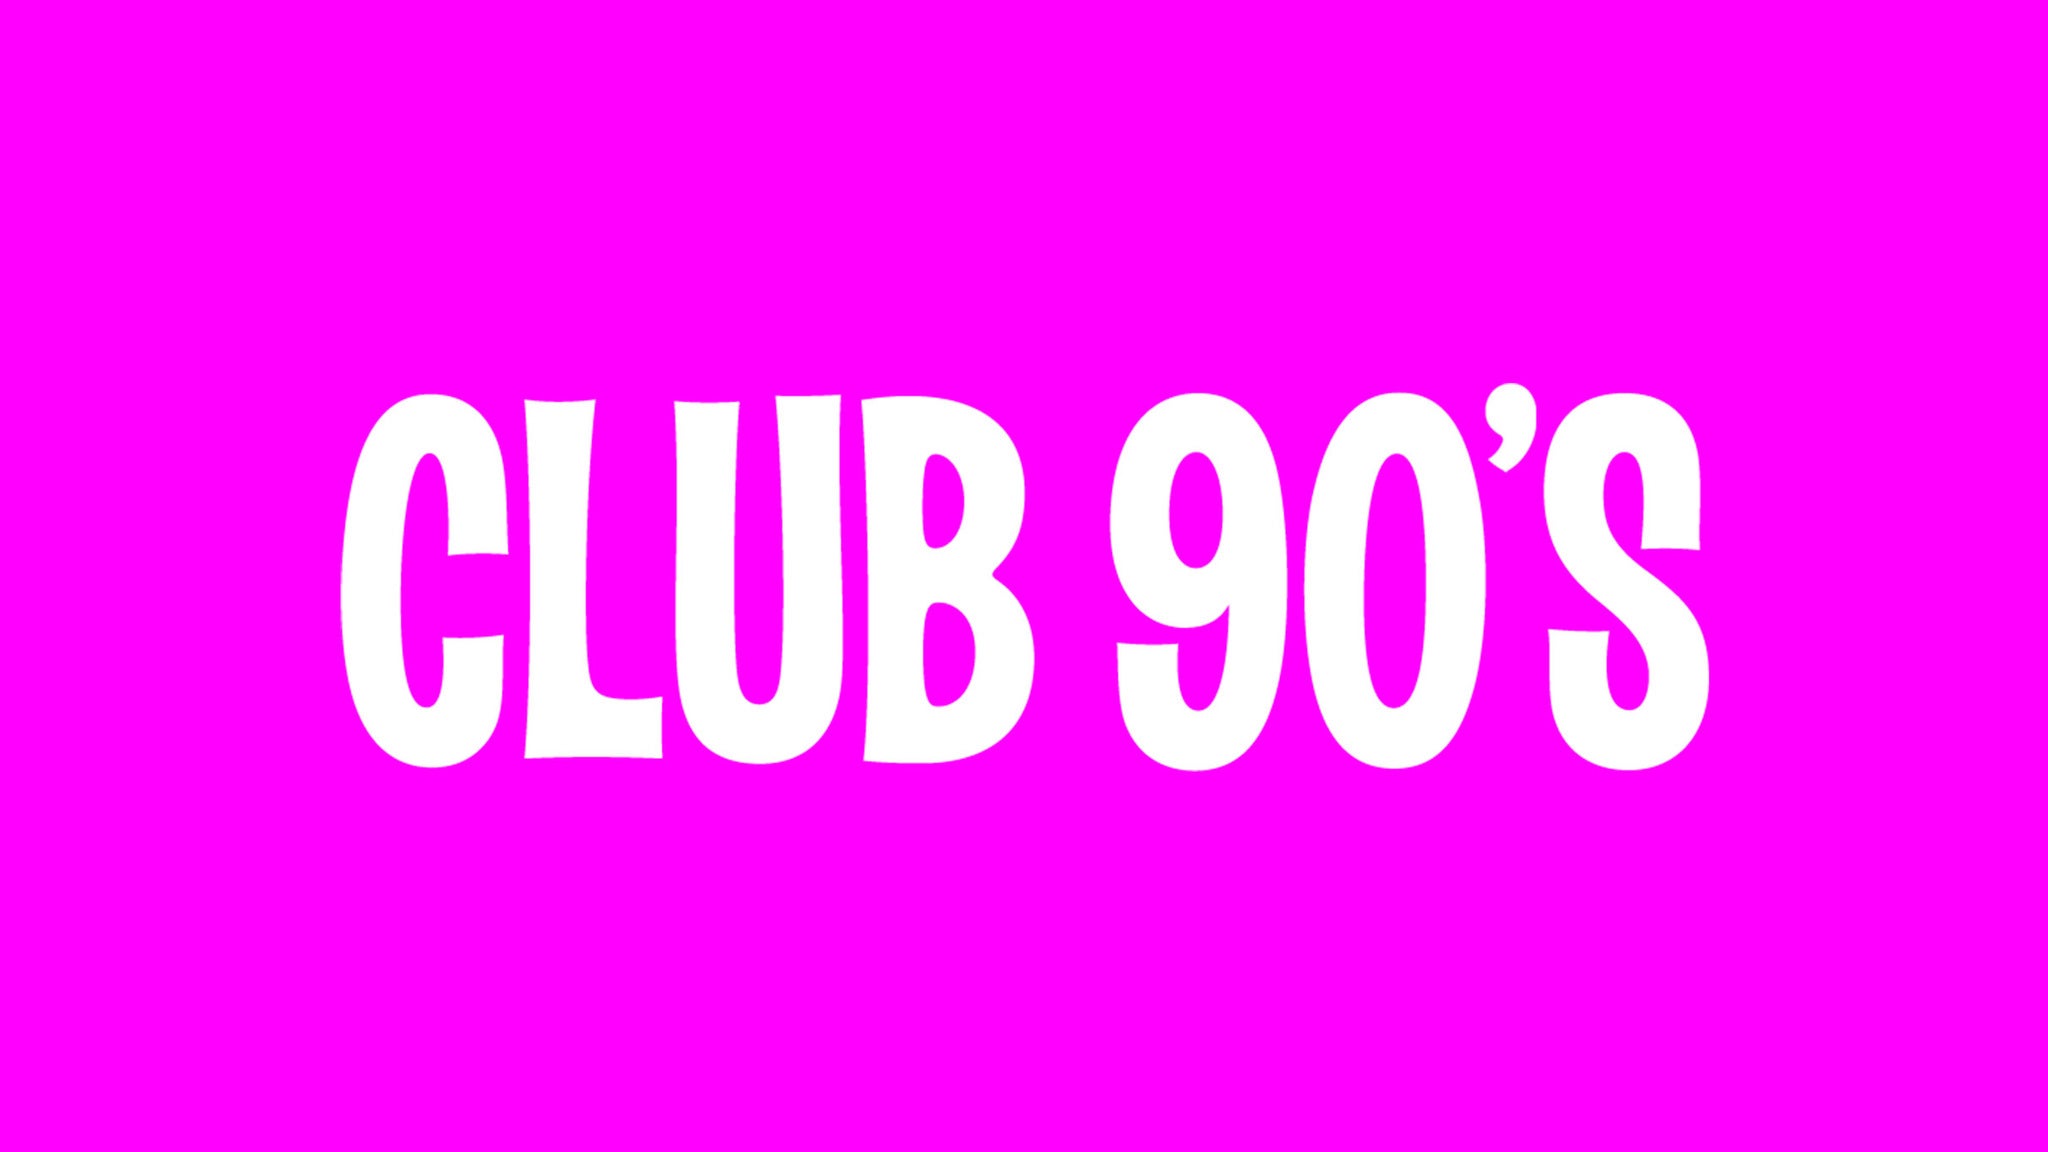 Club 90's Present Un Verano Contigo - Bad Bunny Dance Night pre-sale code for show tickets in Charlotte, NC (The Underground)